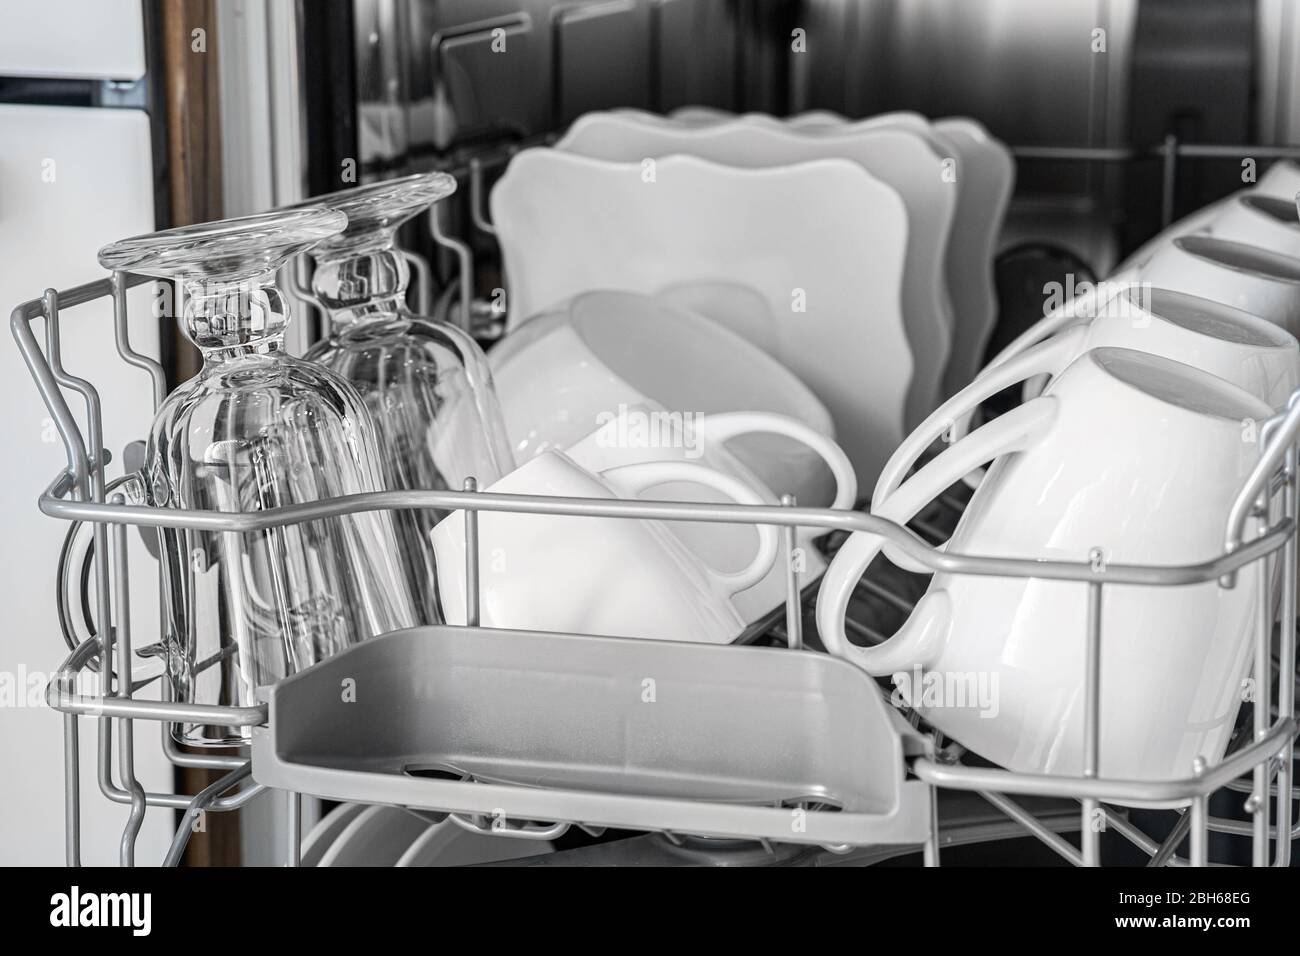 Dans le panier du lave-vaisselle se trouve beaucoup de plats propres. Les tasses et les assiettes brillent après le lavage, le gros plan Banque D'Images